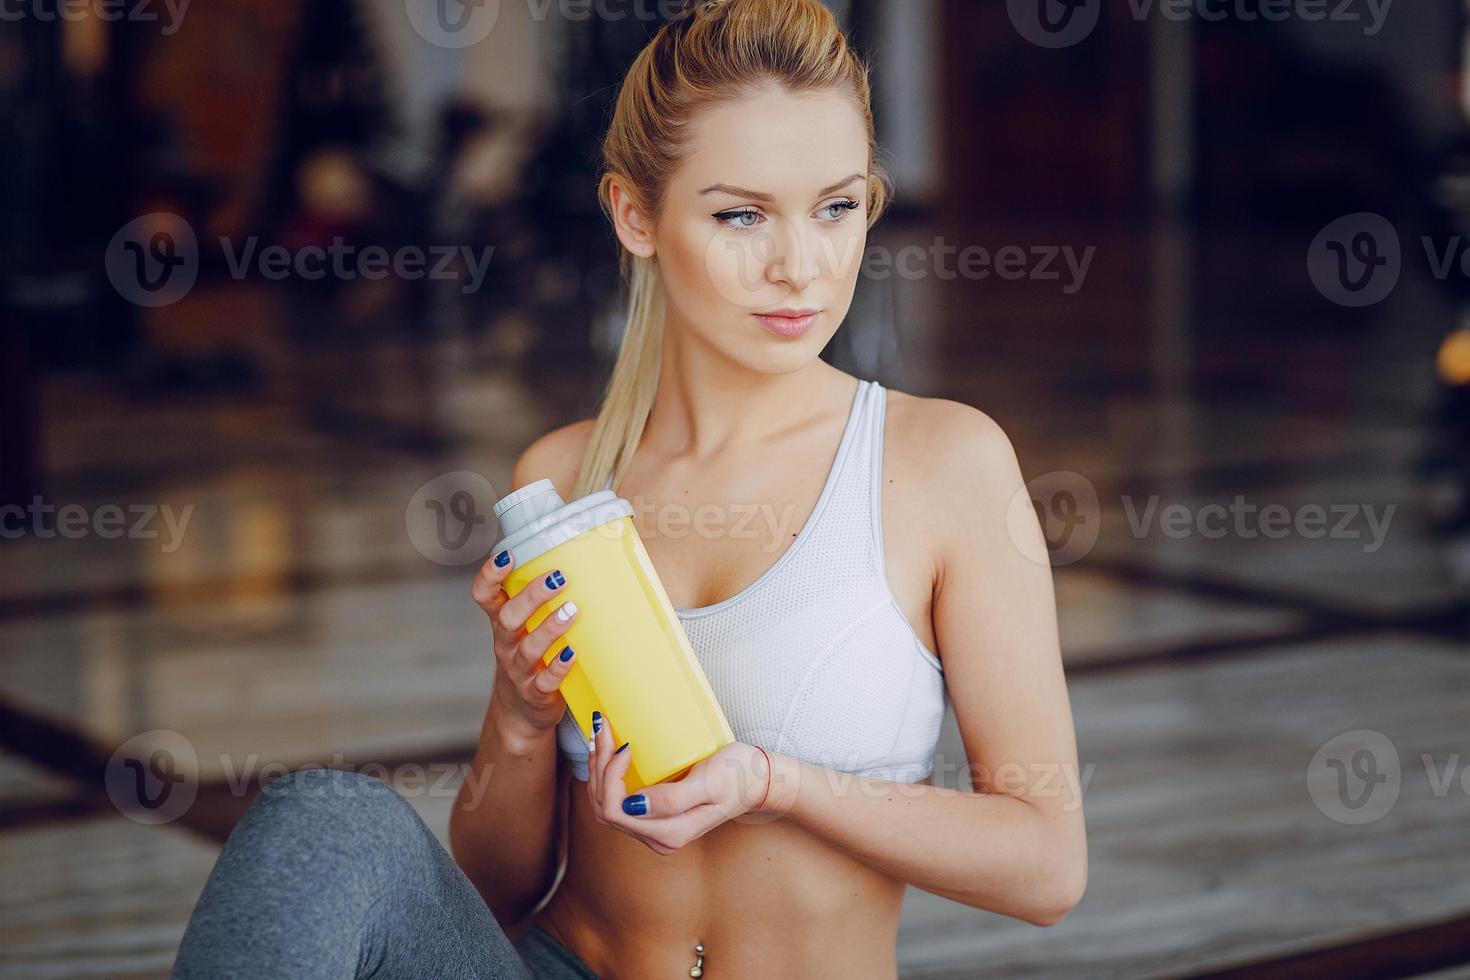 Beautiful blonde doing gym exercises photo